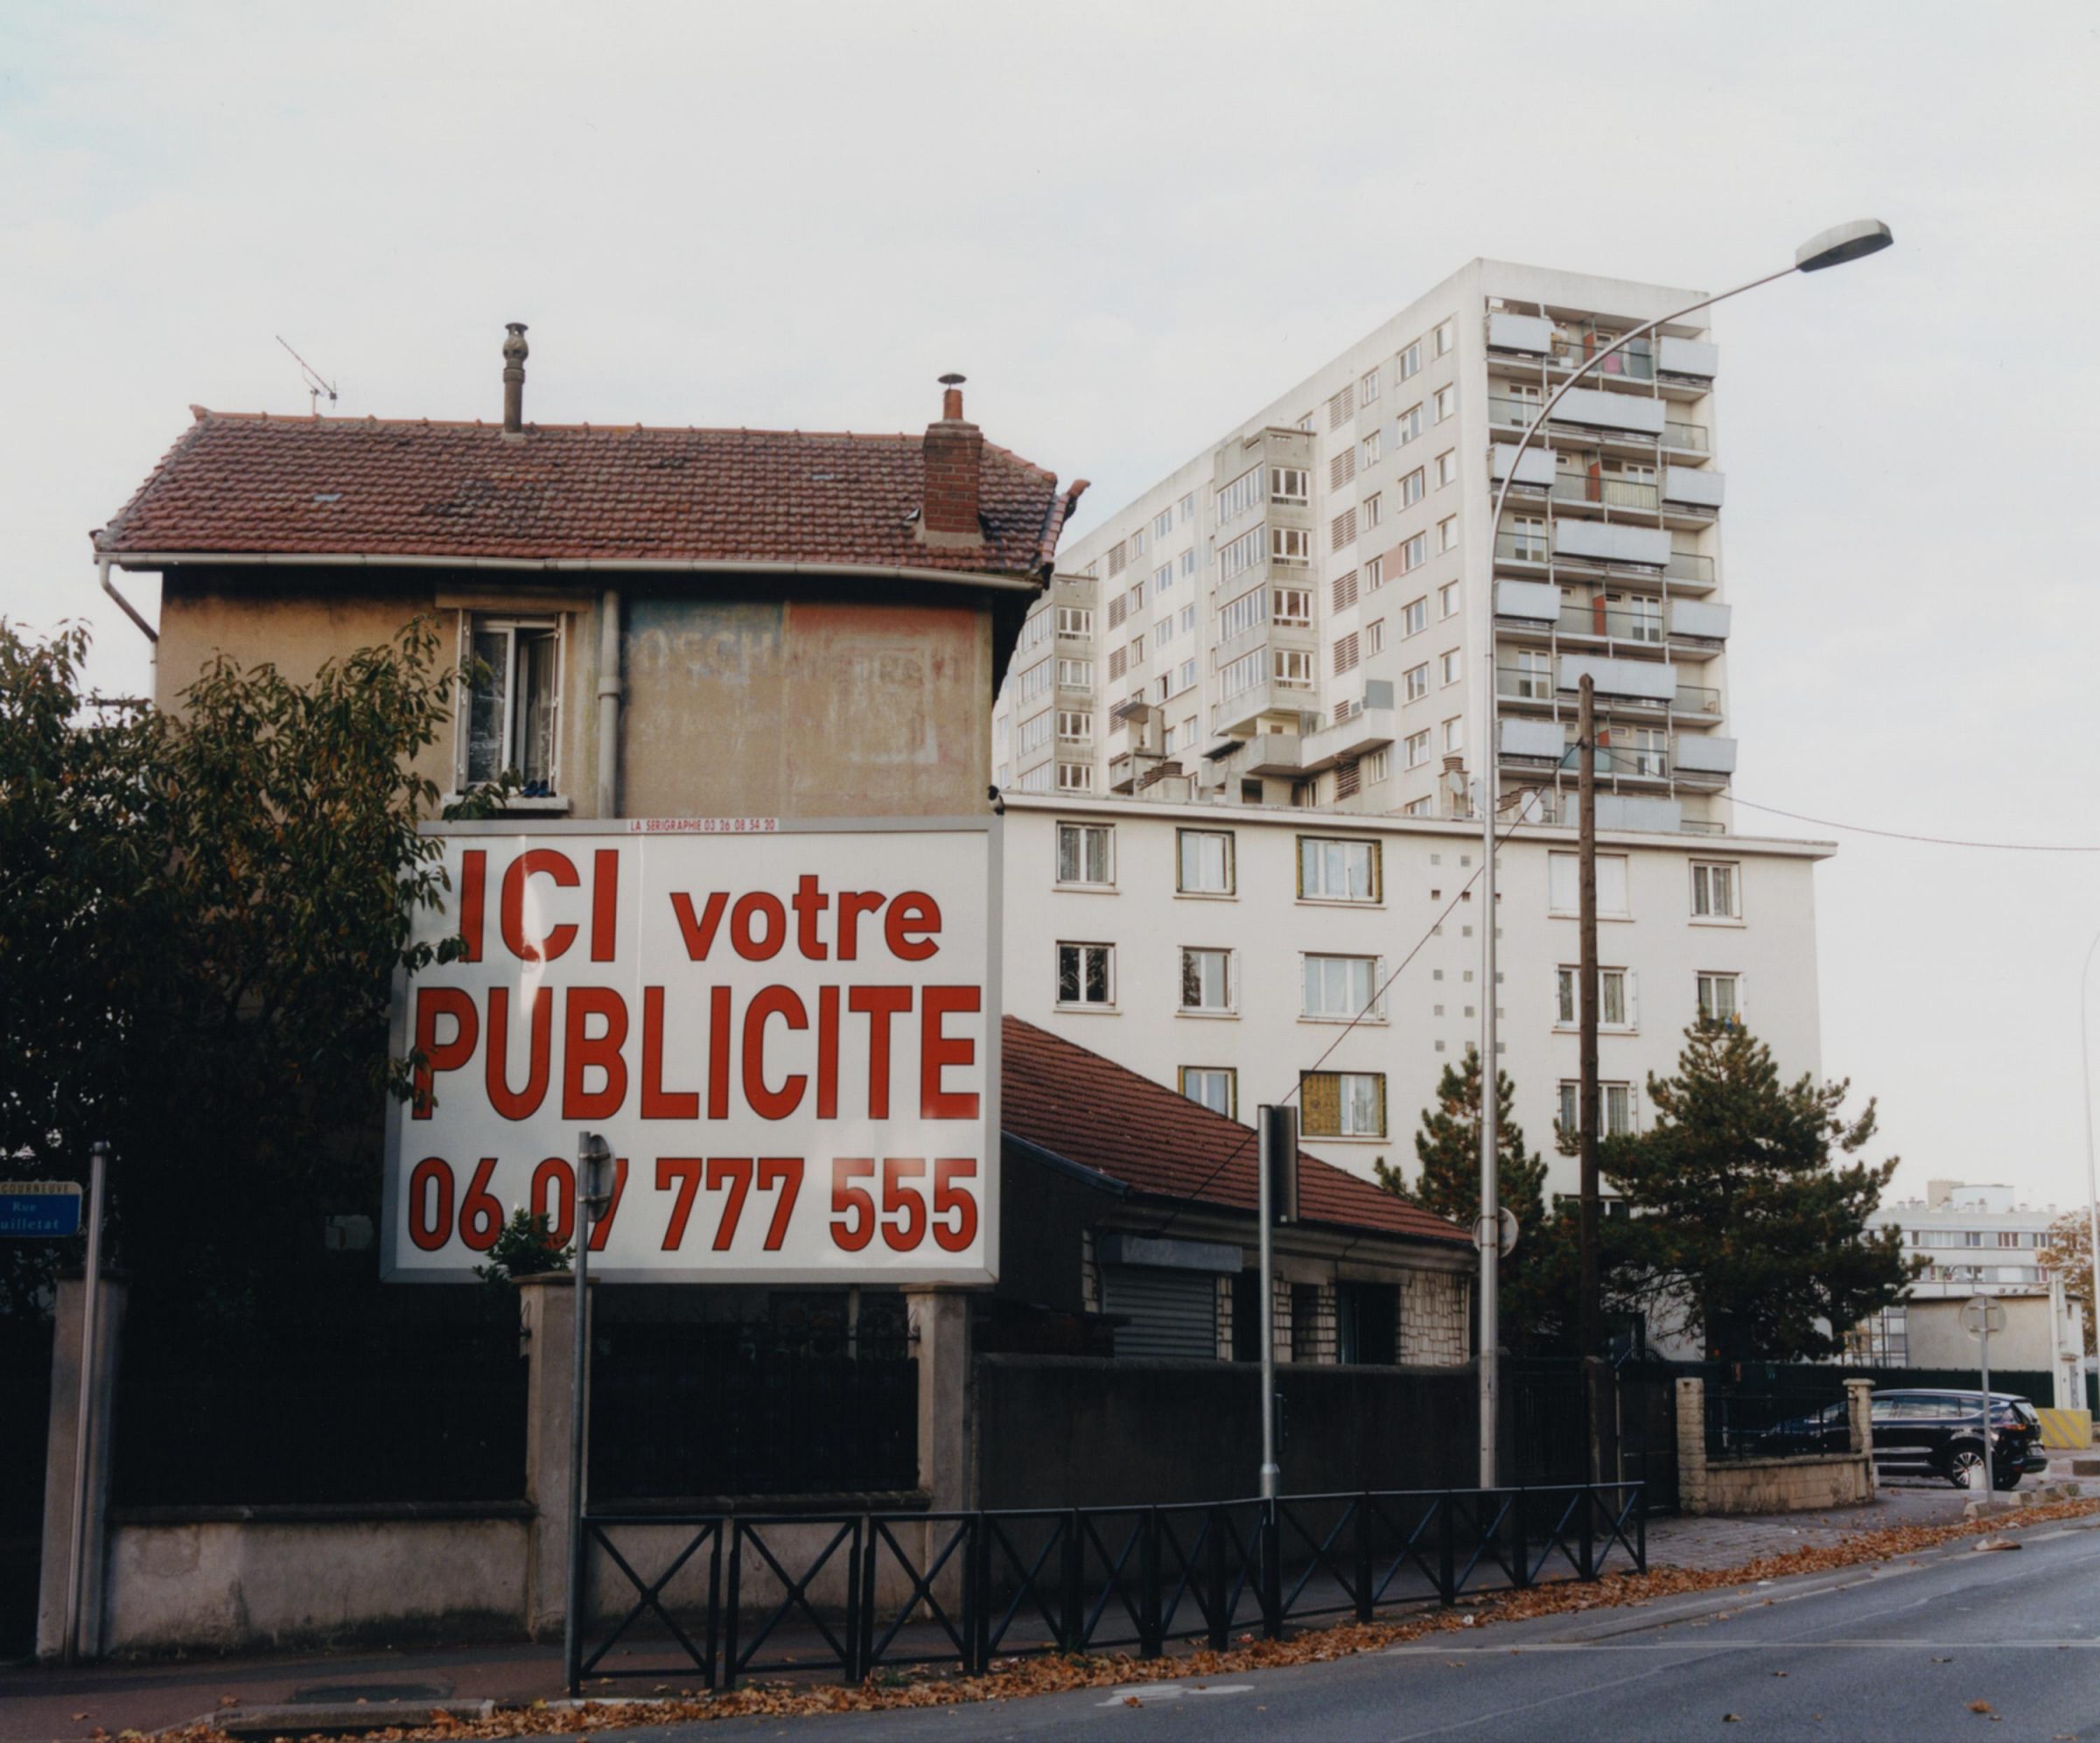 *Cité des 4000*, La Courneuve, Août 2018 - © Maciek Pożoga